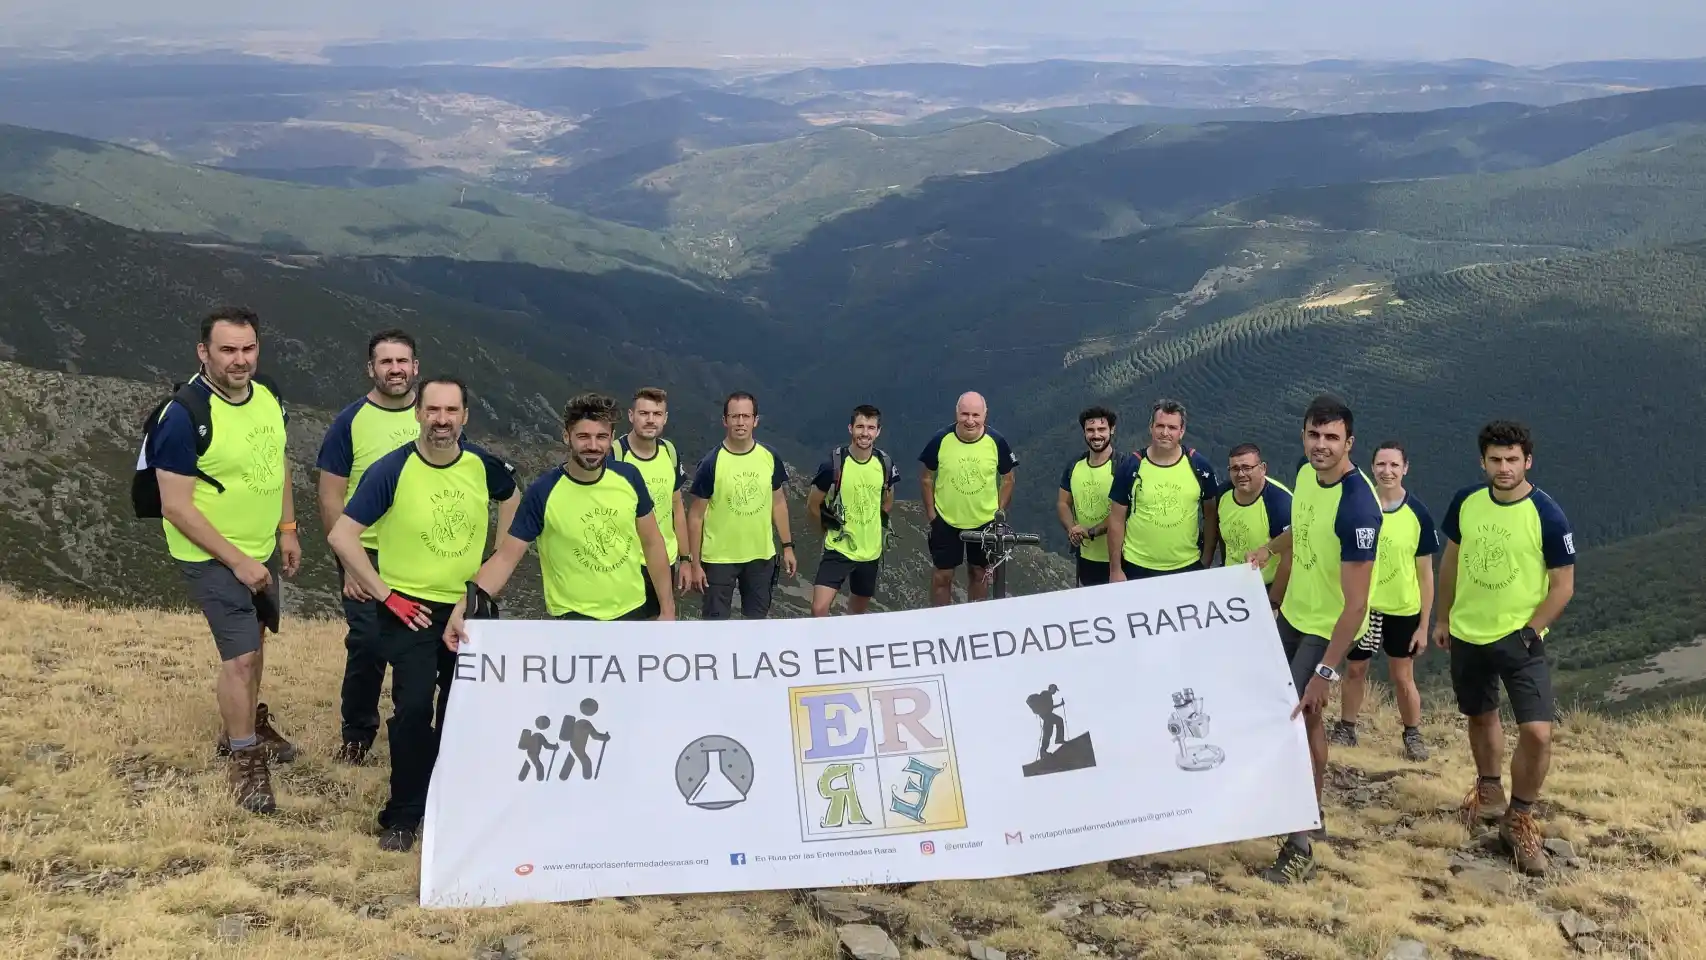 15 valientes suben la montaña más alta de la provincia de Burgos en su lucha por visibilizar las enfermedades raras